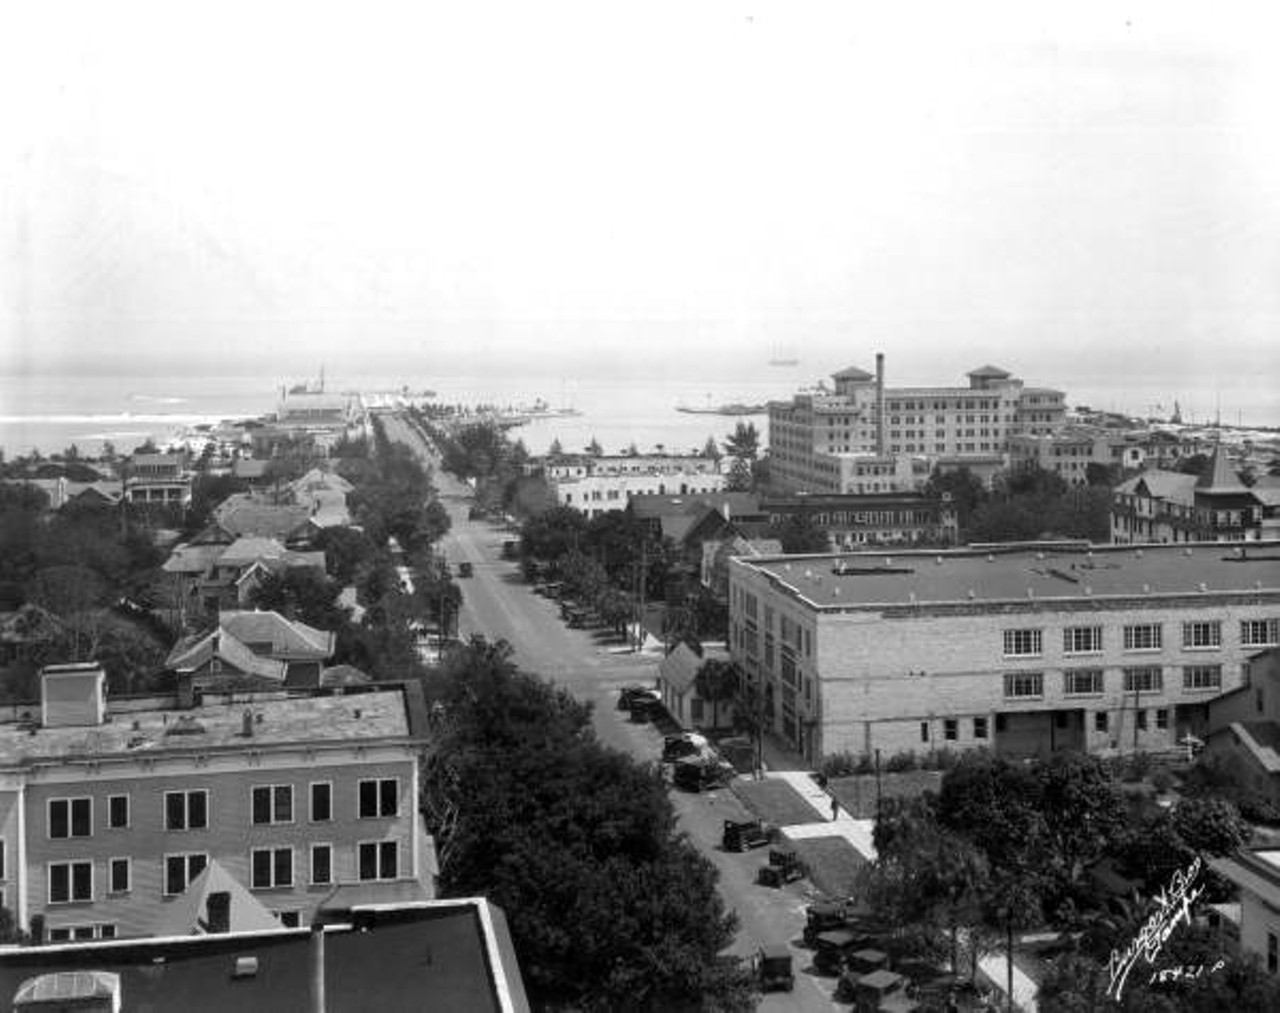 Panoramic view looking towards the municipal pier - Saint Petersburg, Florida, 1926.